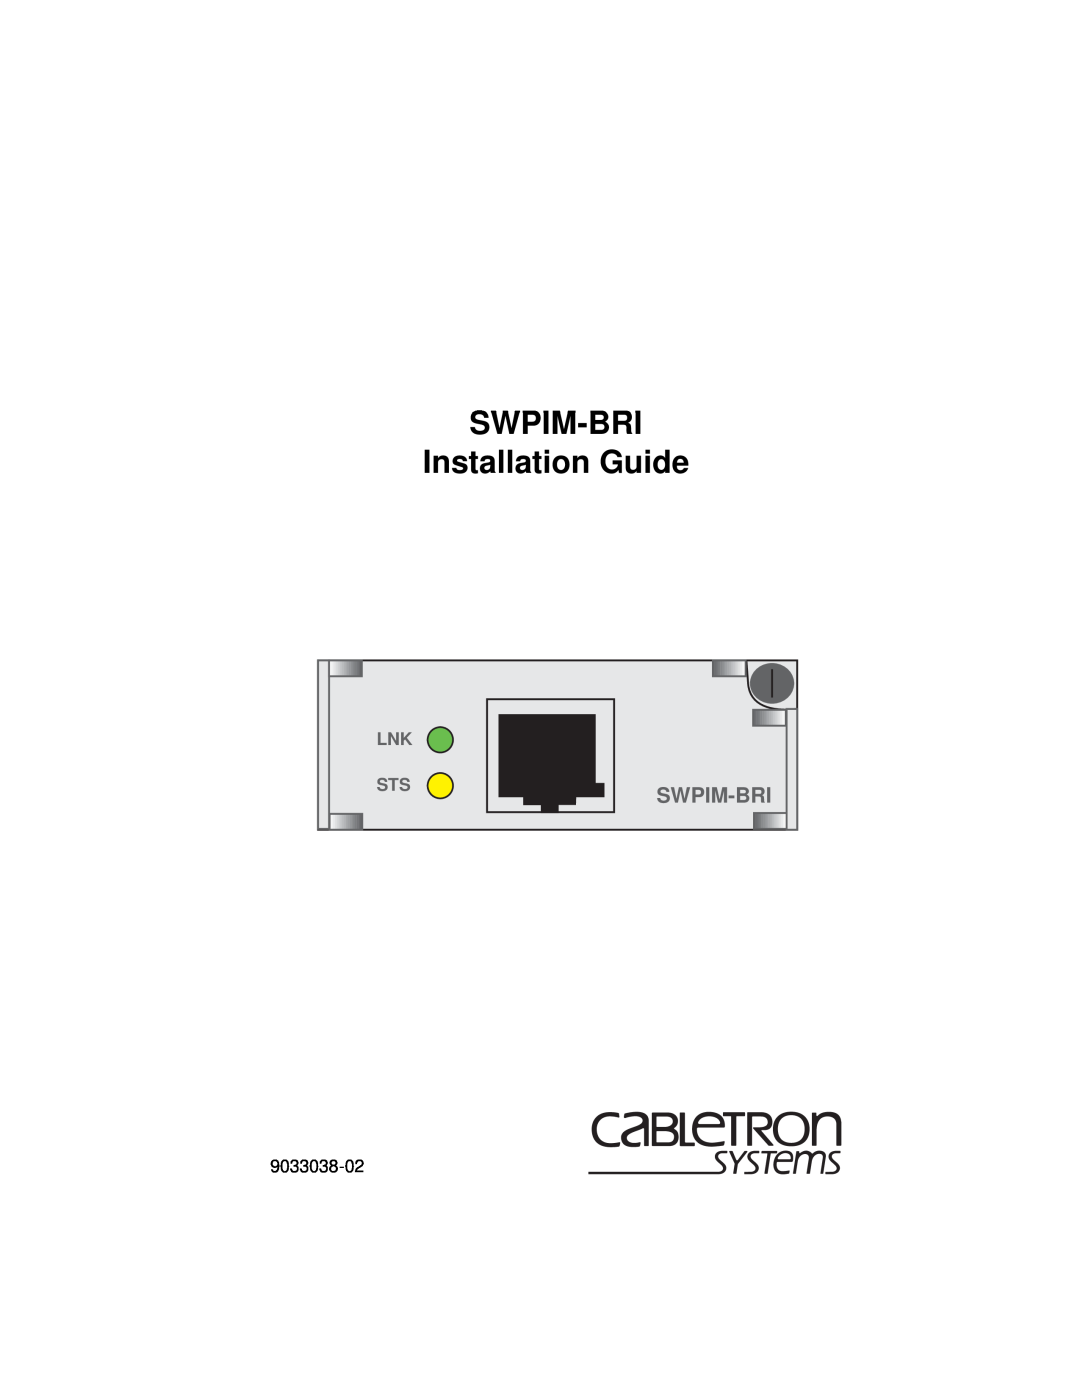 Cabletron Systems manual SWPIM-BRI Installation Guide, Swpim-Bri 